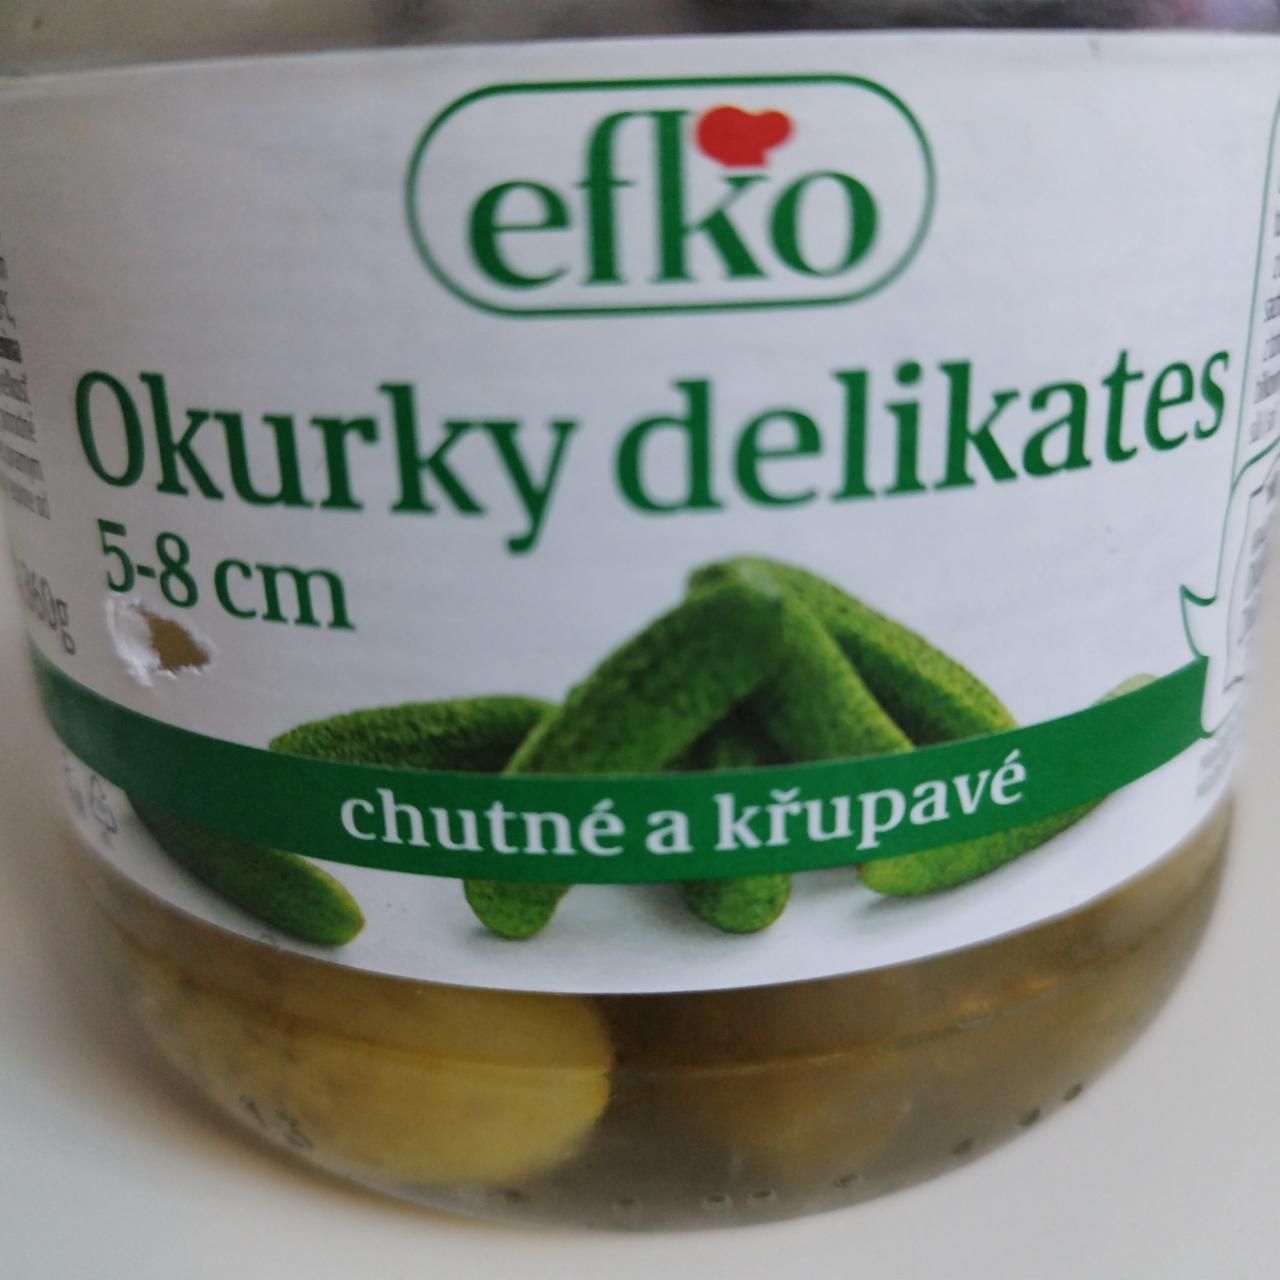 Fotografie - Okurky delikates 5-8 cm Efko